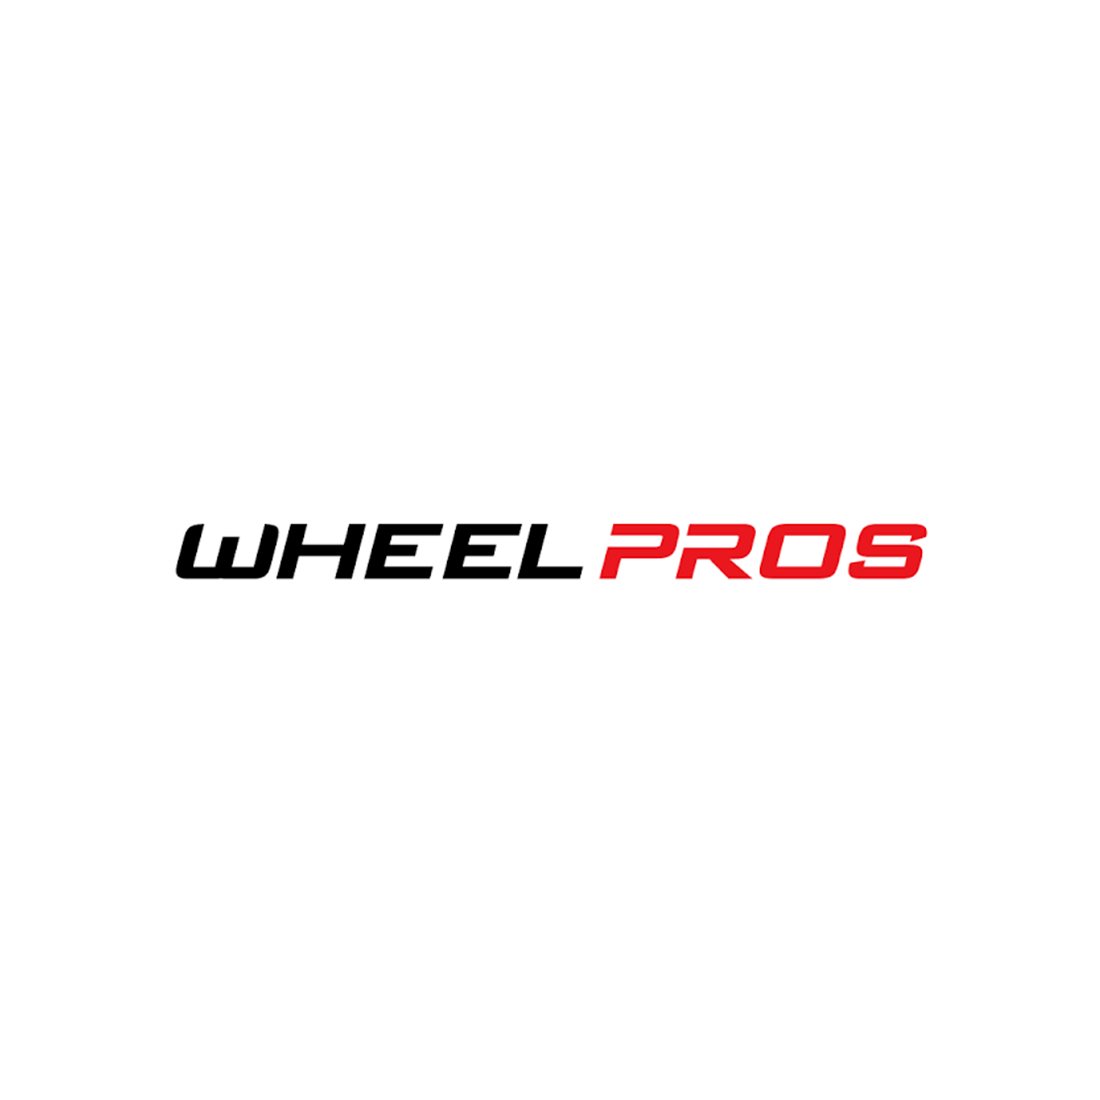 Wheel Pros 